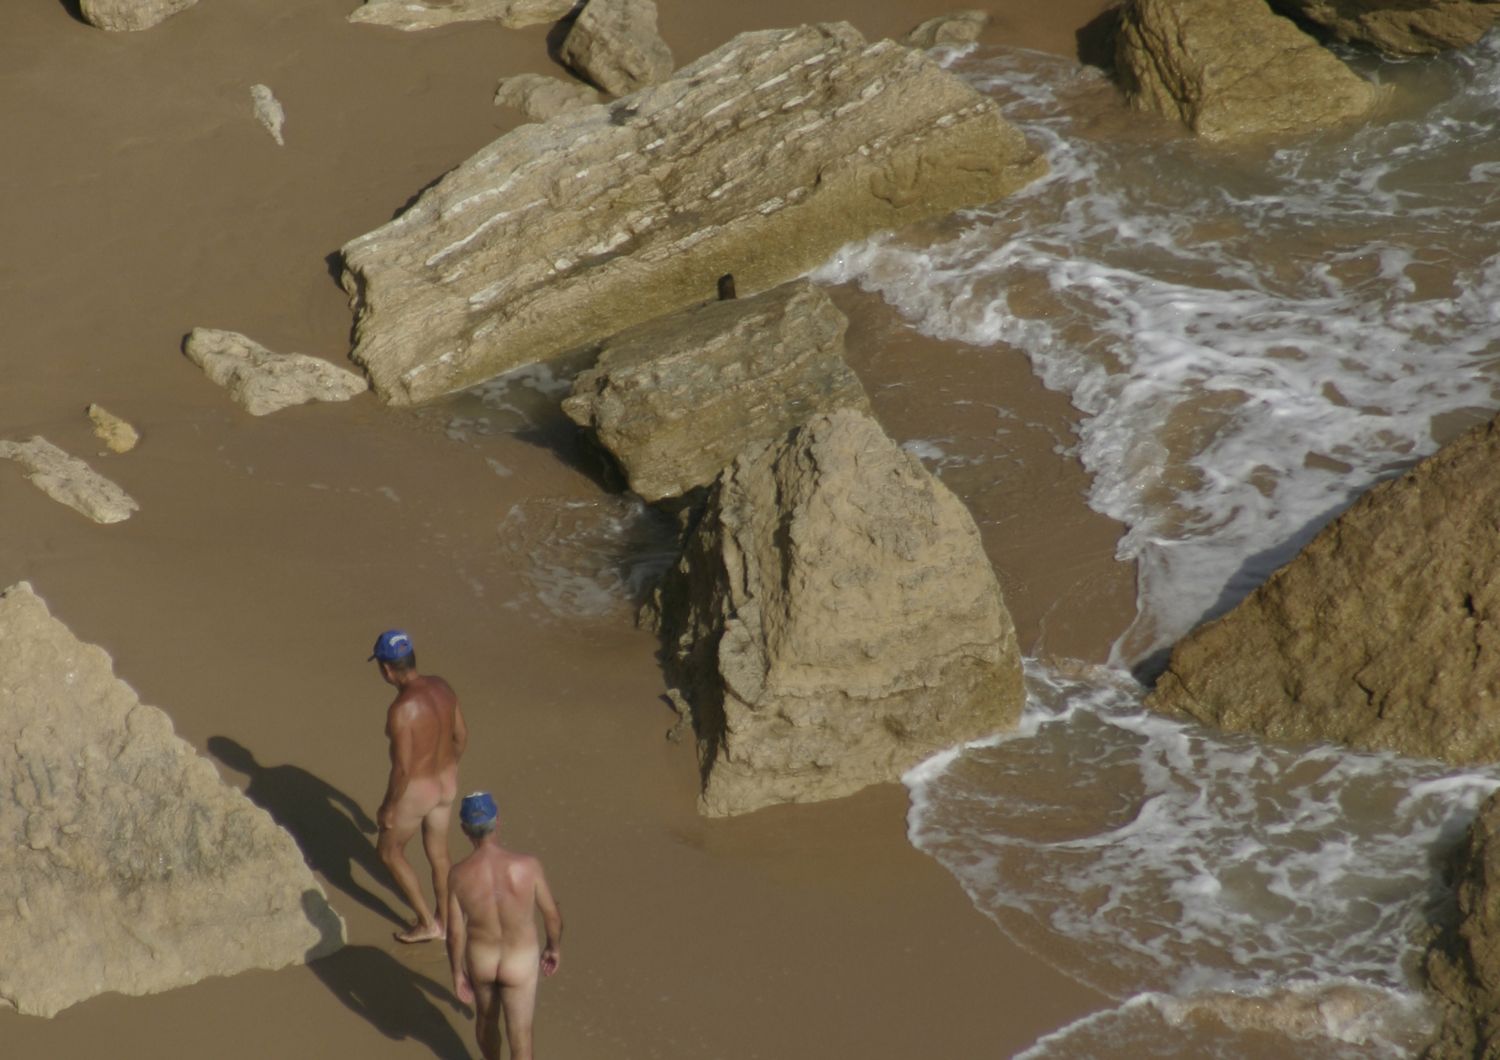 internet ucciso spazi spiagge nudisti